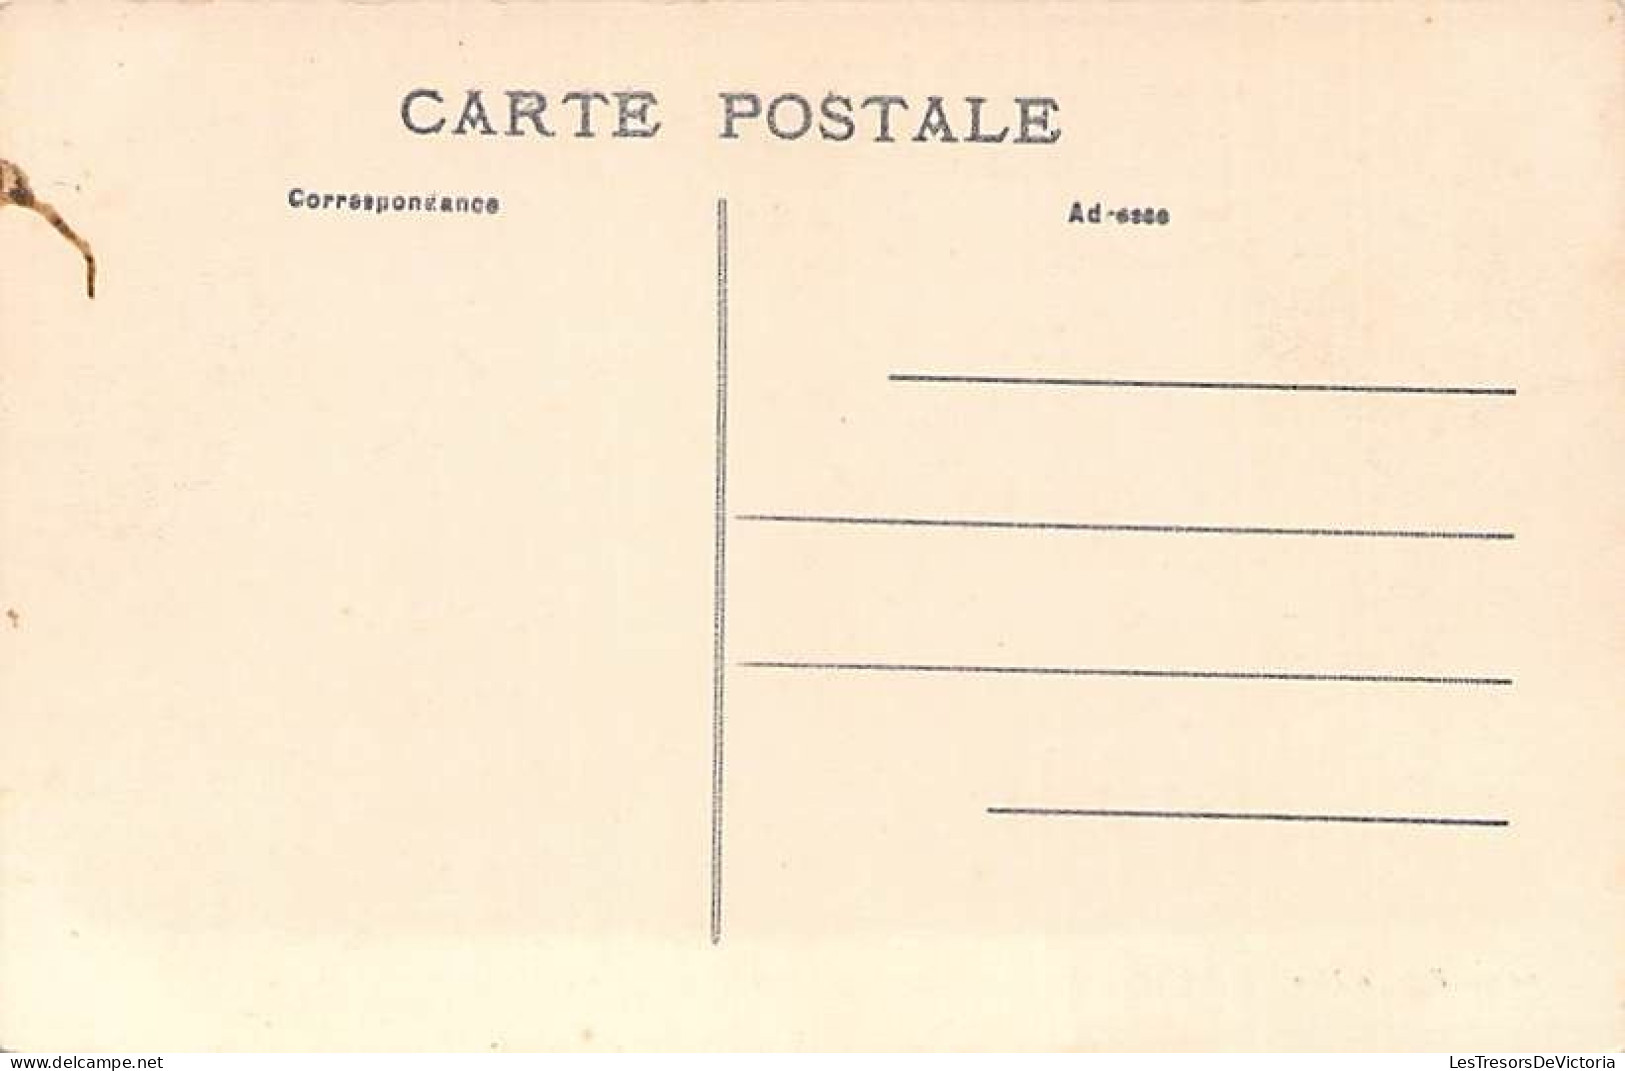 Nouvelle Calédonie - Thio - Le Pont Submersible Après Le Cyclone Des 12 Et 13 Février 1909 - Carte Postale Ancienne - New Caledonia